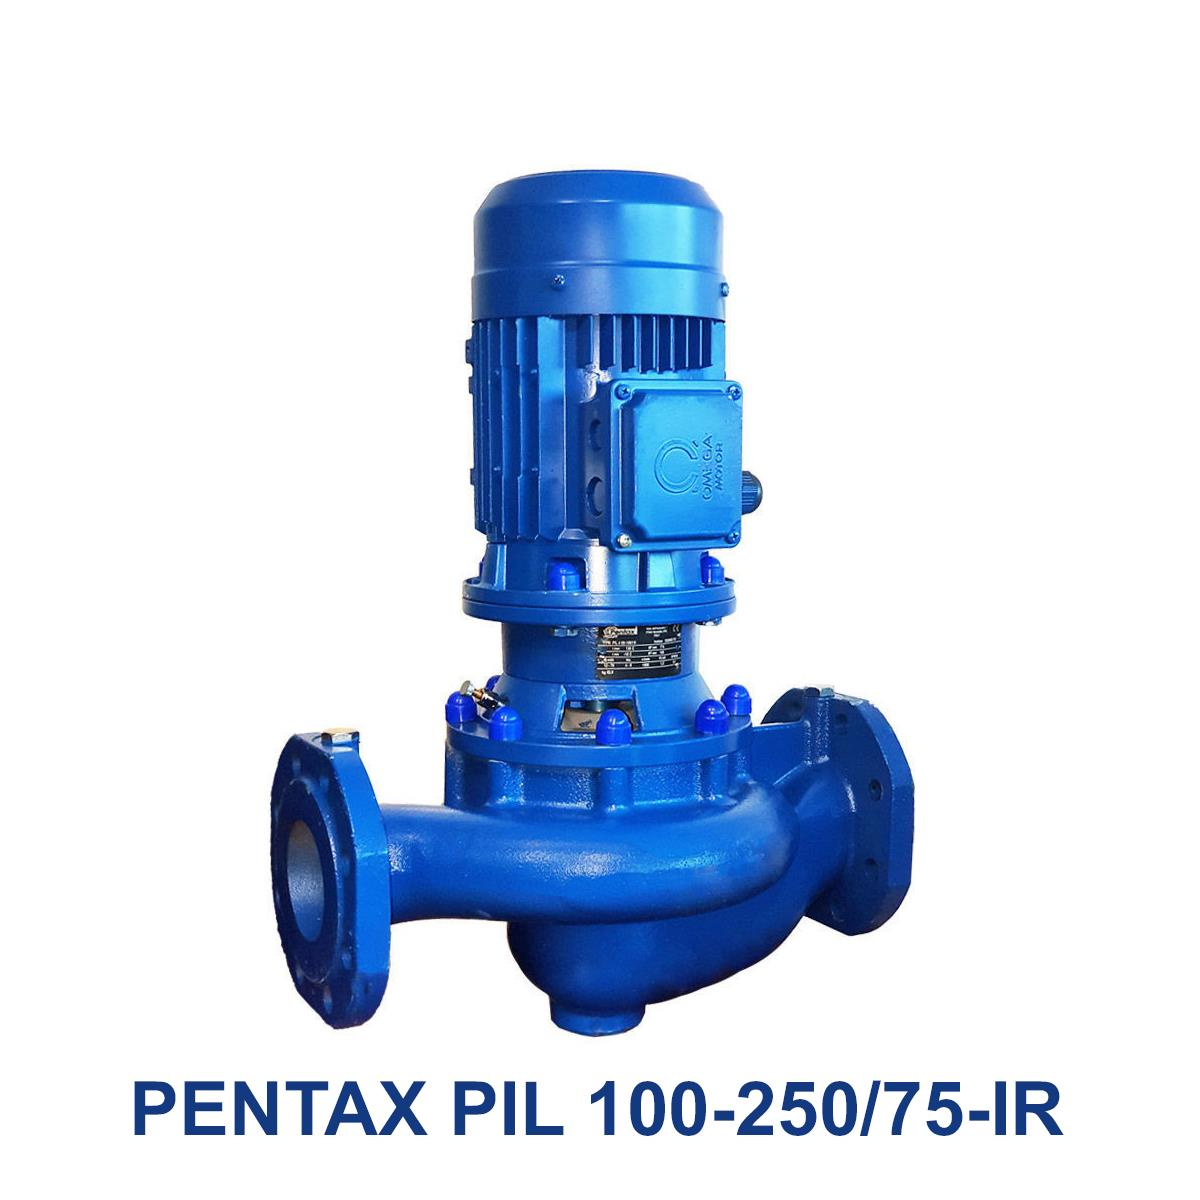 PENTAX-PIL-100-250-75-IR